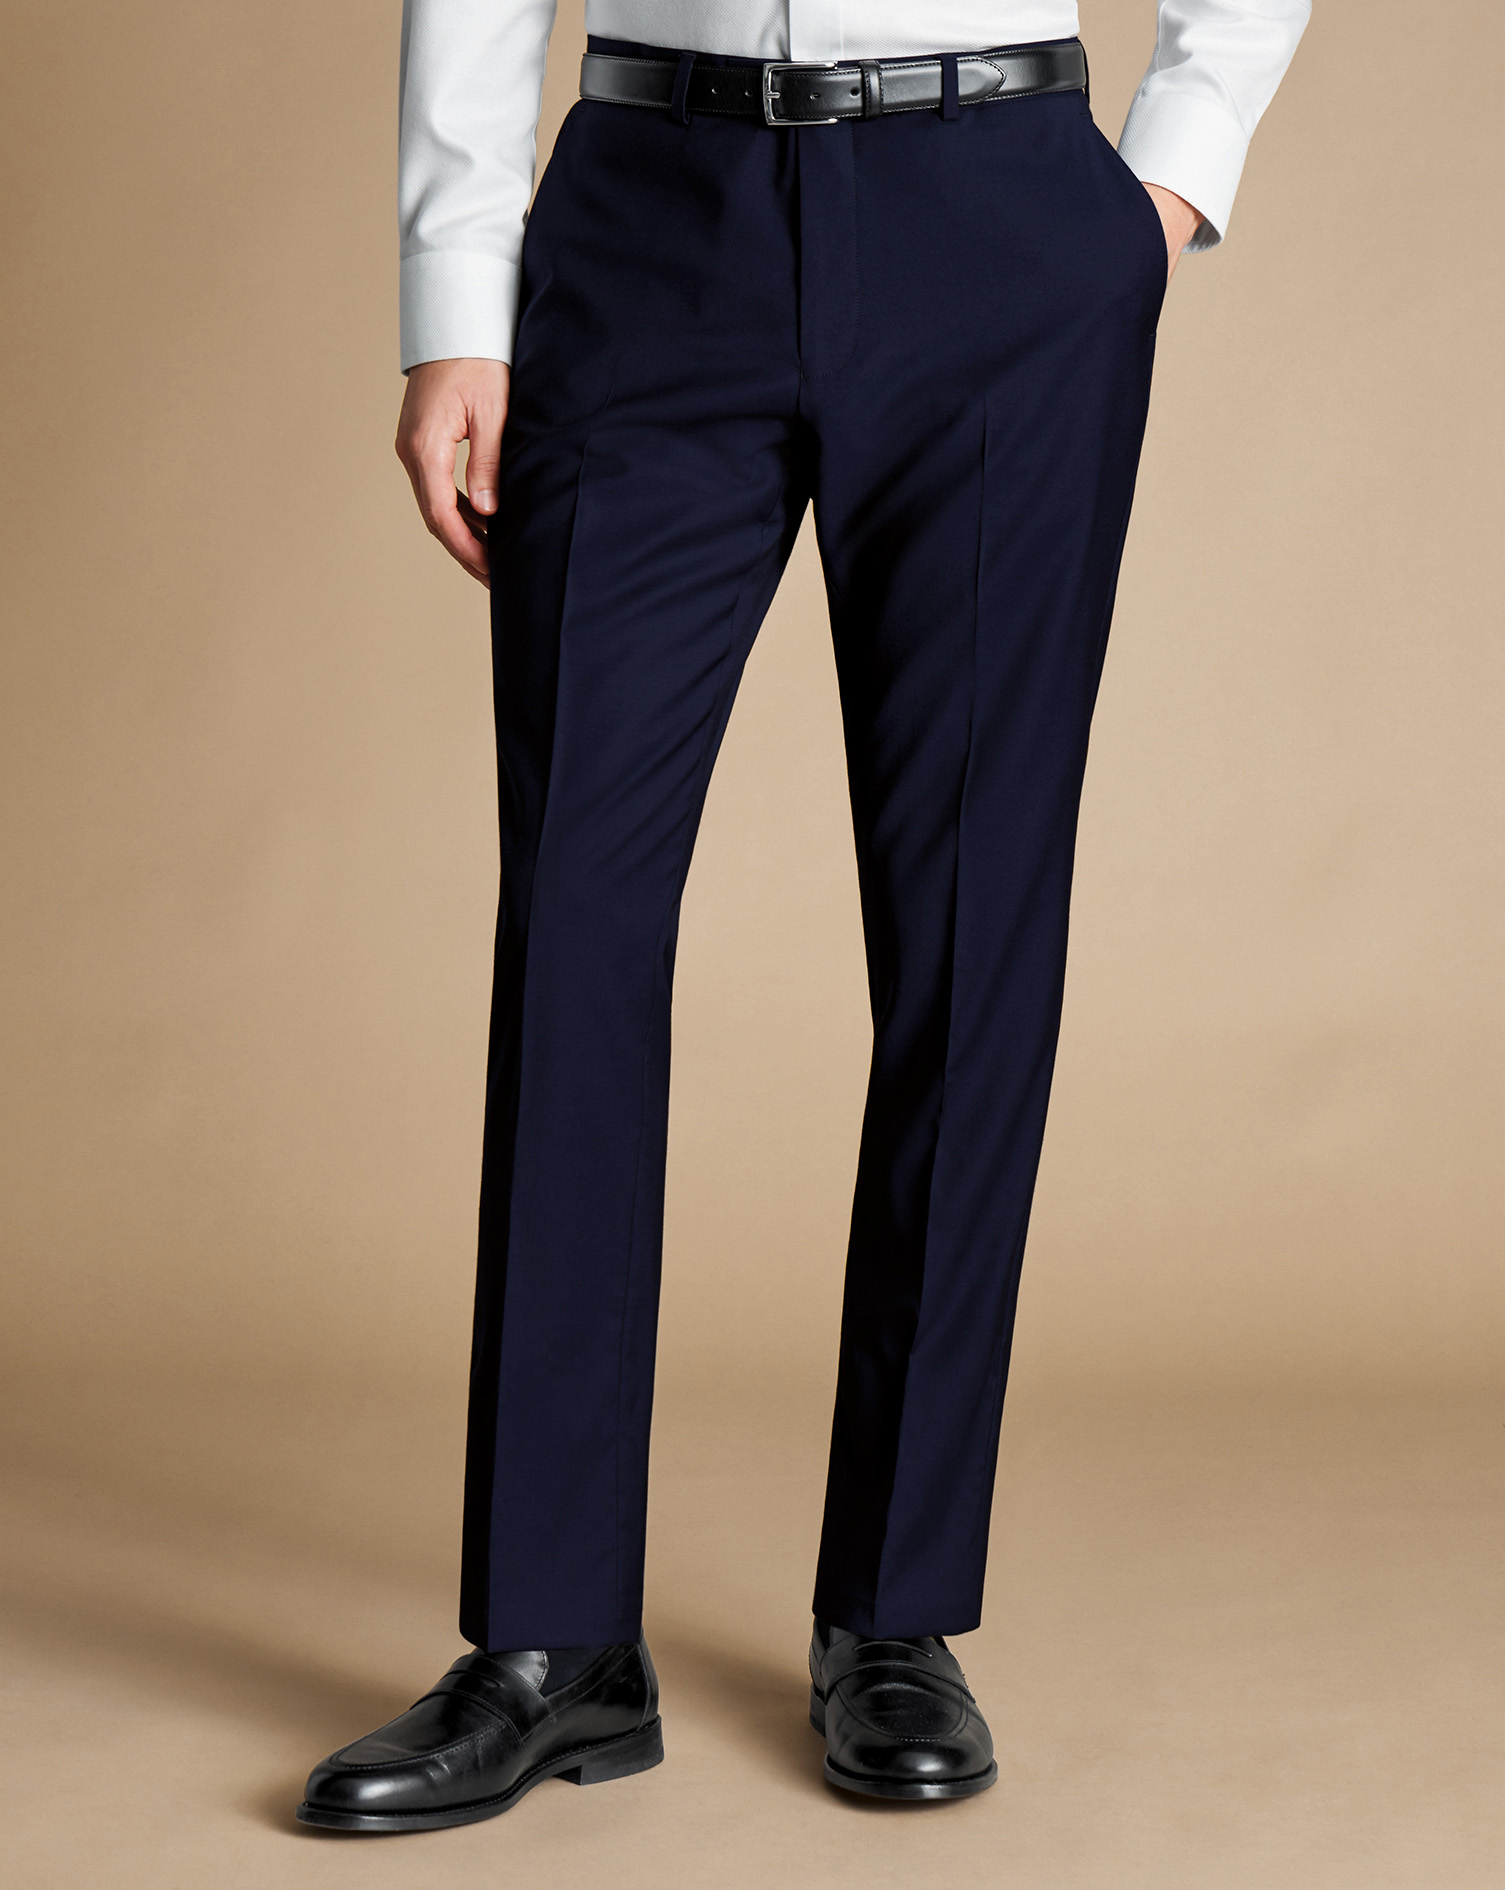 Men's Charles Tyrwhitt Italian Suit Trousers - Dark Navy Size 36/38
